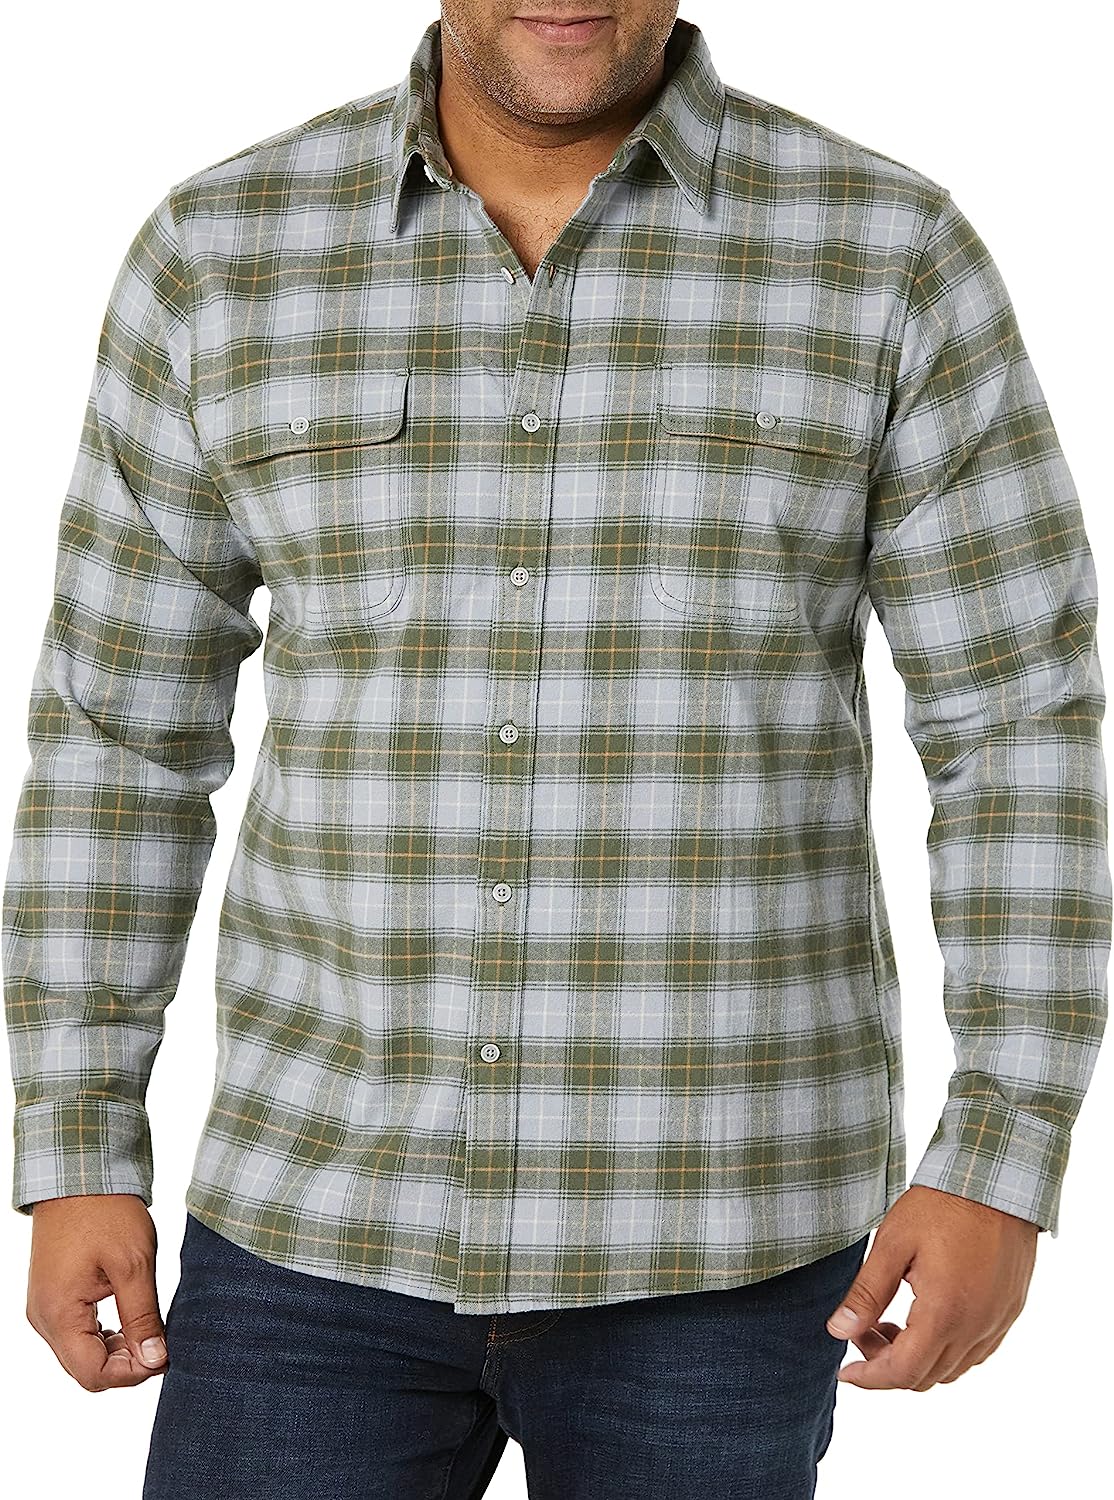 Goodthreads Men's Standard-Fit Long-Sleeve Stretch Flannel Shirt